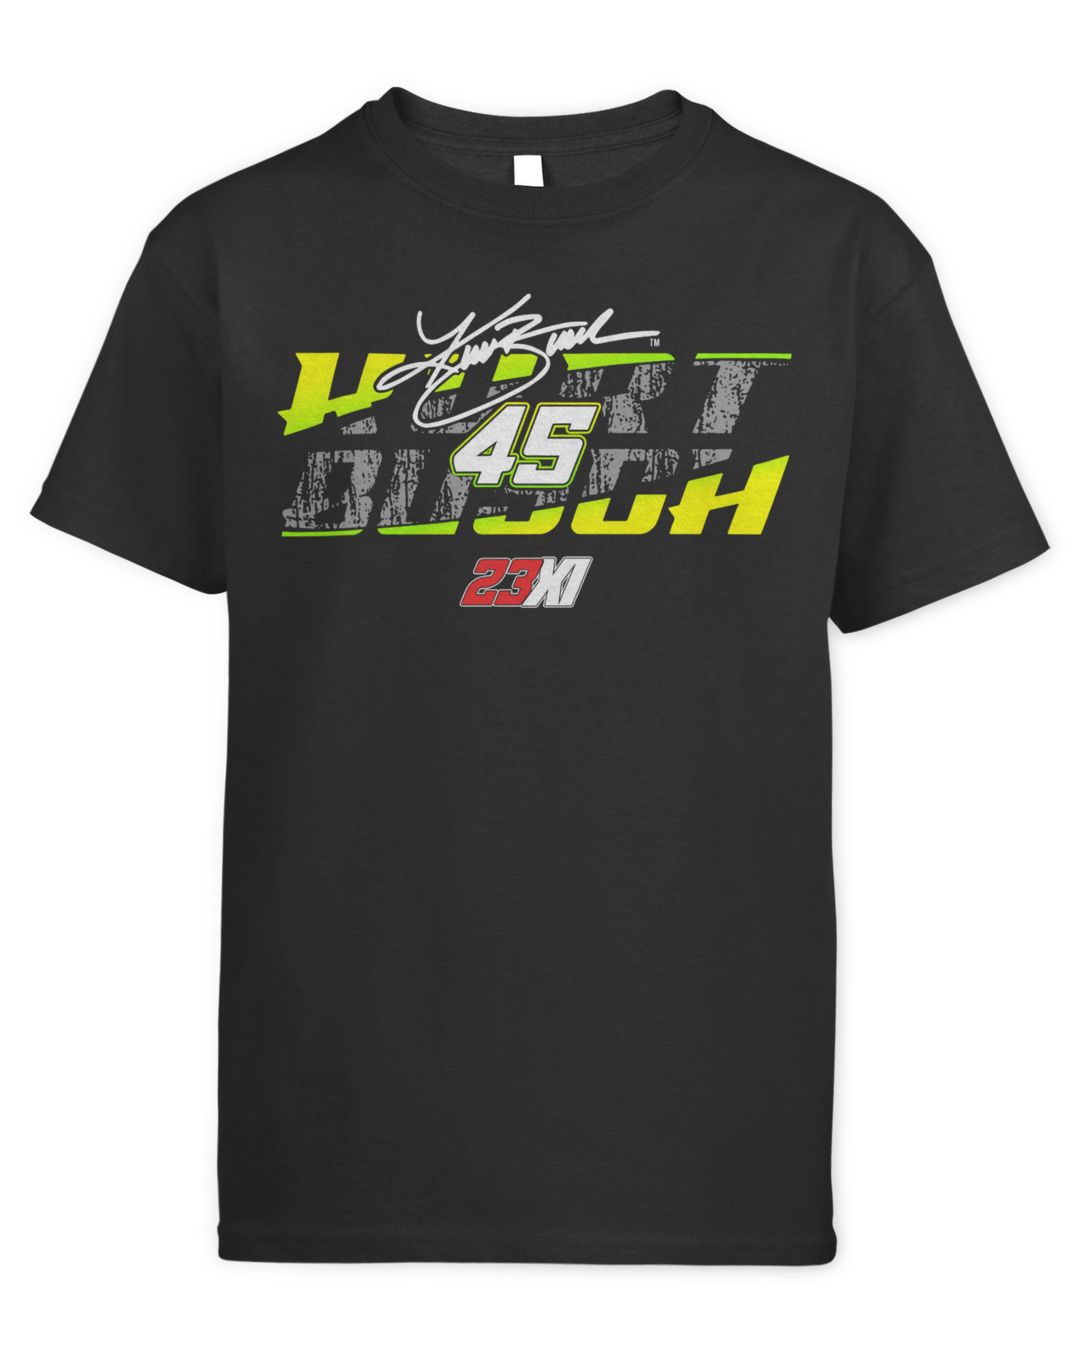 Kurt Busch 23XI Racing Lifestyle 2-Spot Shirt